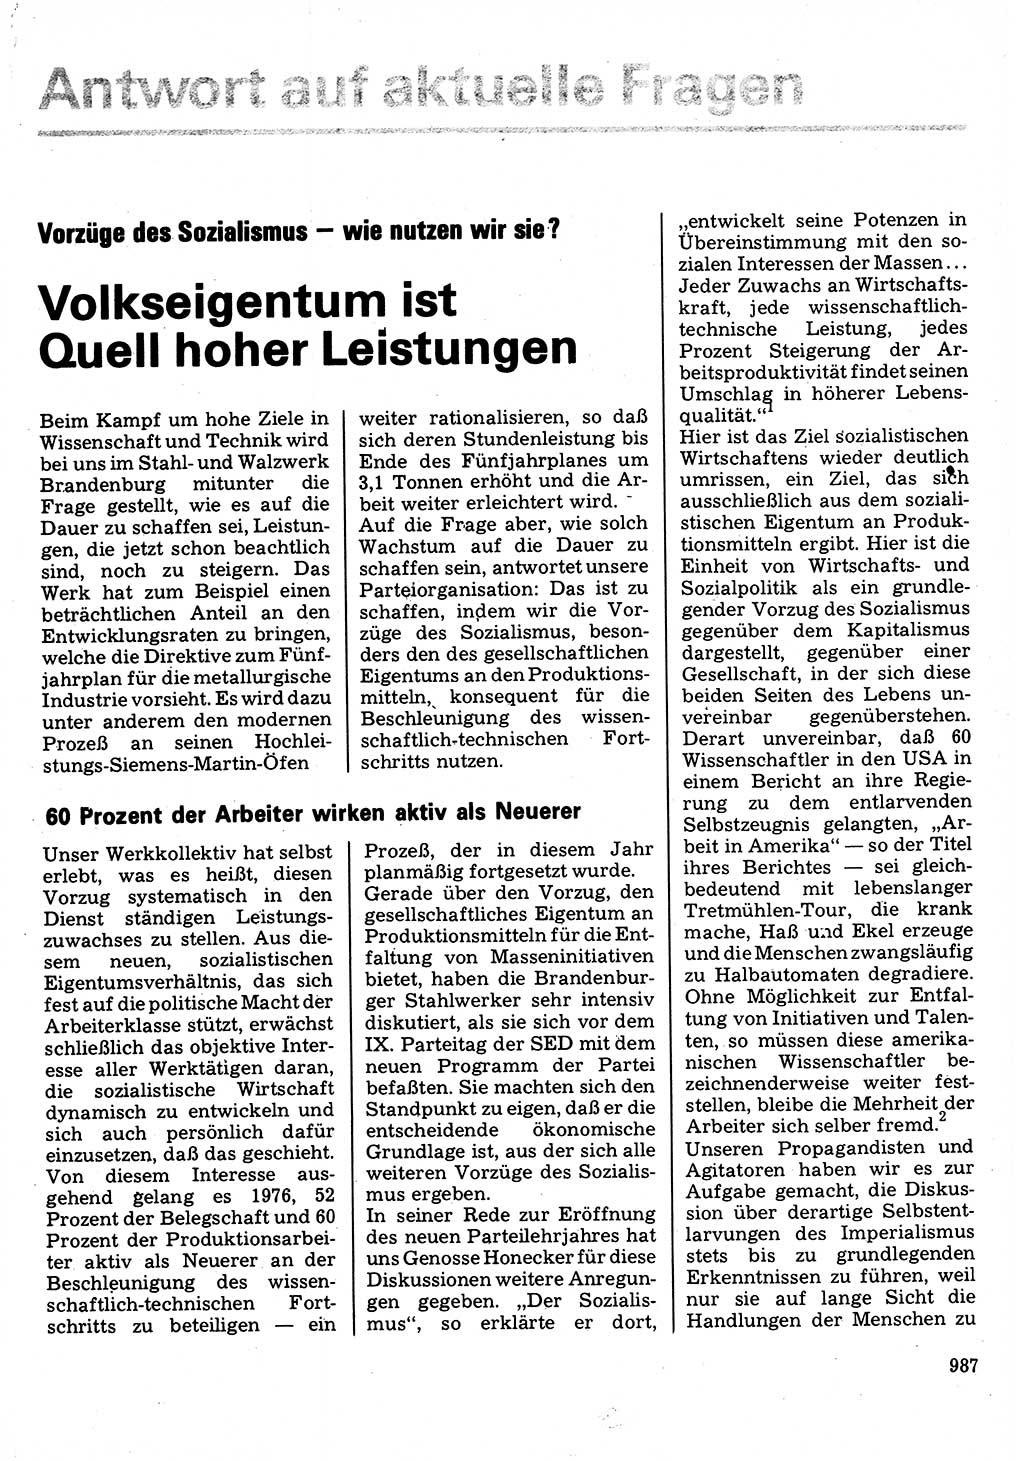 Neuer Weg (NW), Organ des Zentralkomitees (ZK) der SED (Sozialistische Einheitspartei Deutschlands) für Fragen des Parteilebens, 32. Jahrgang [Deutsche Demokratische Republik (DDR)] 1977, Seite 987 (NW ZK SED DDR 1977, S. 987)